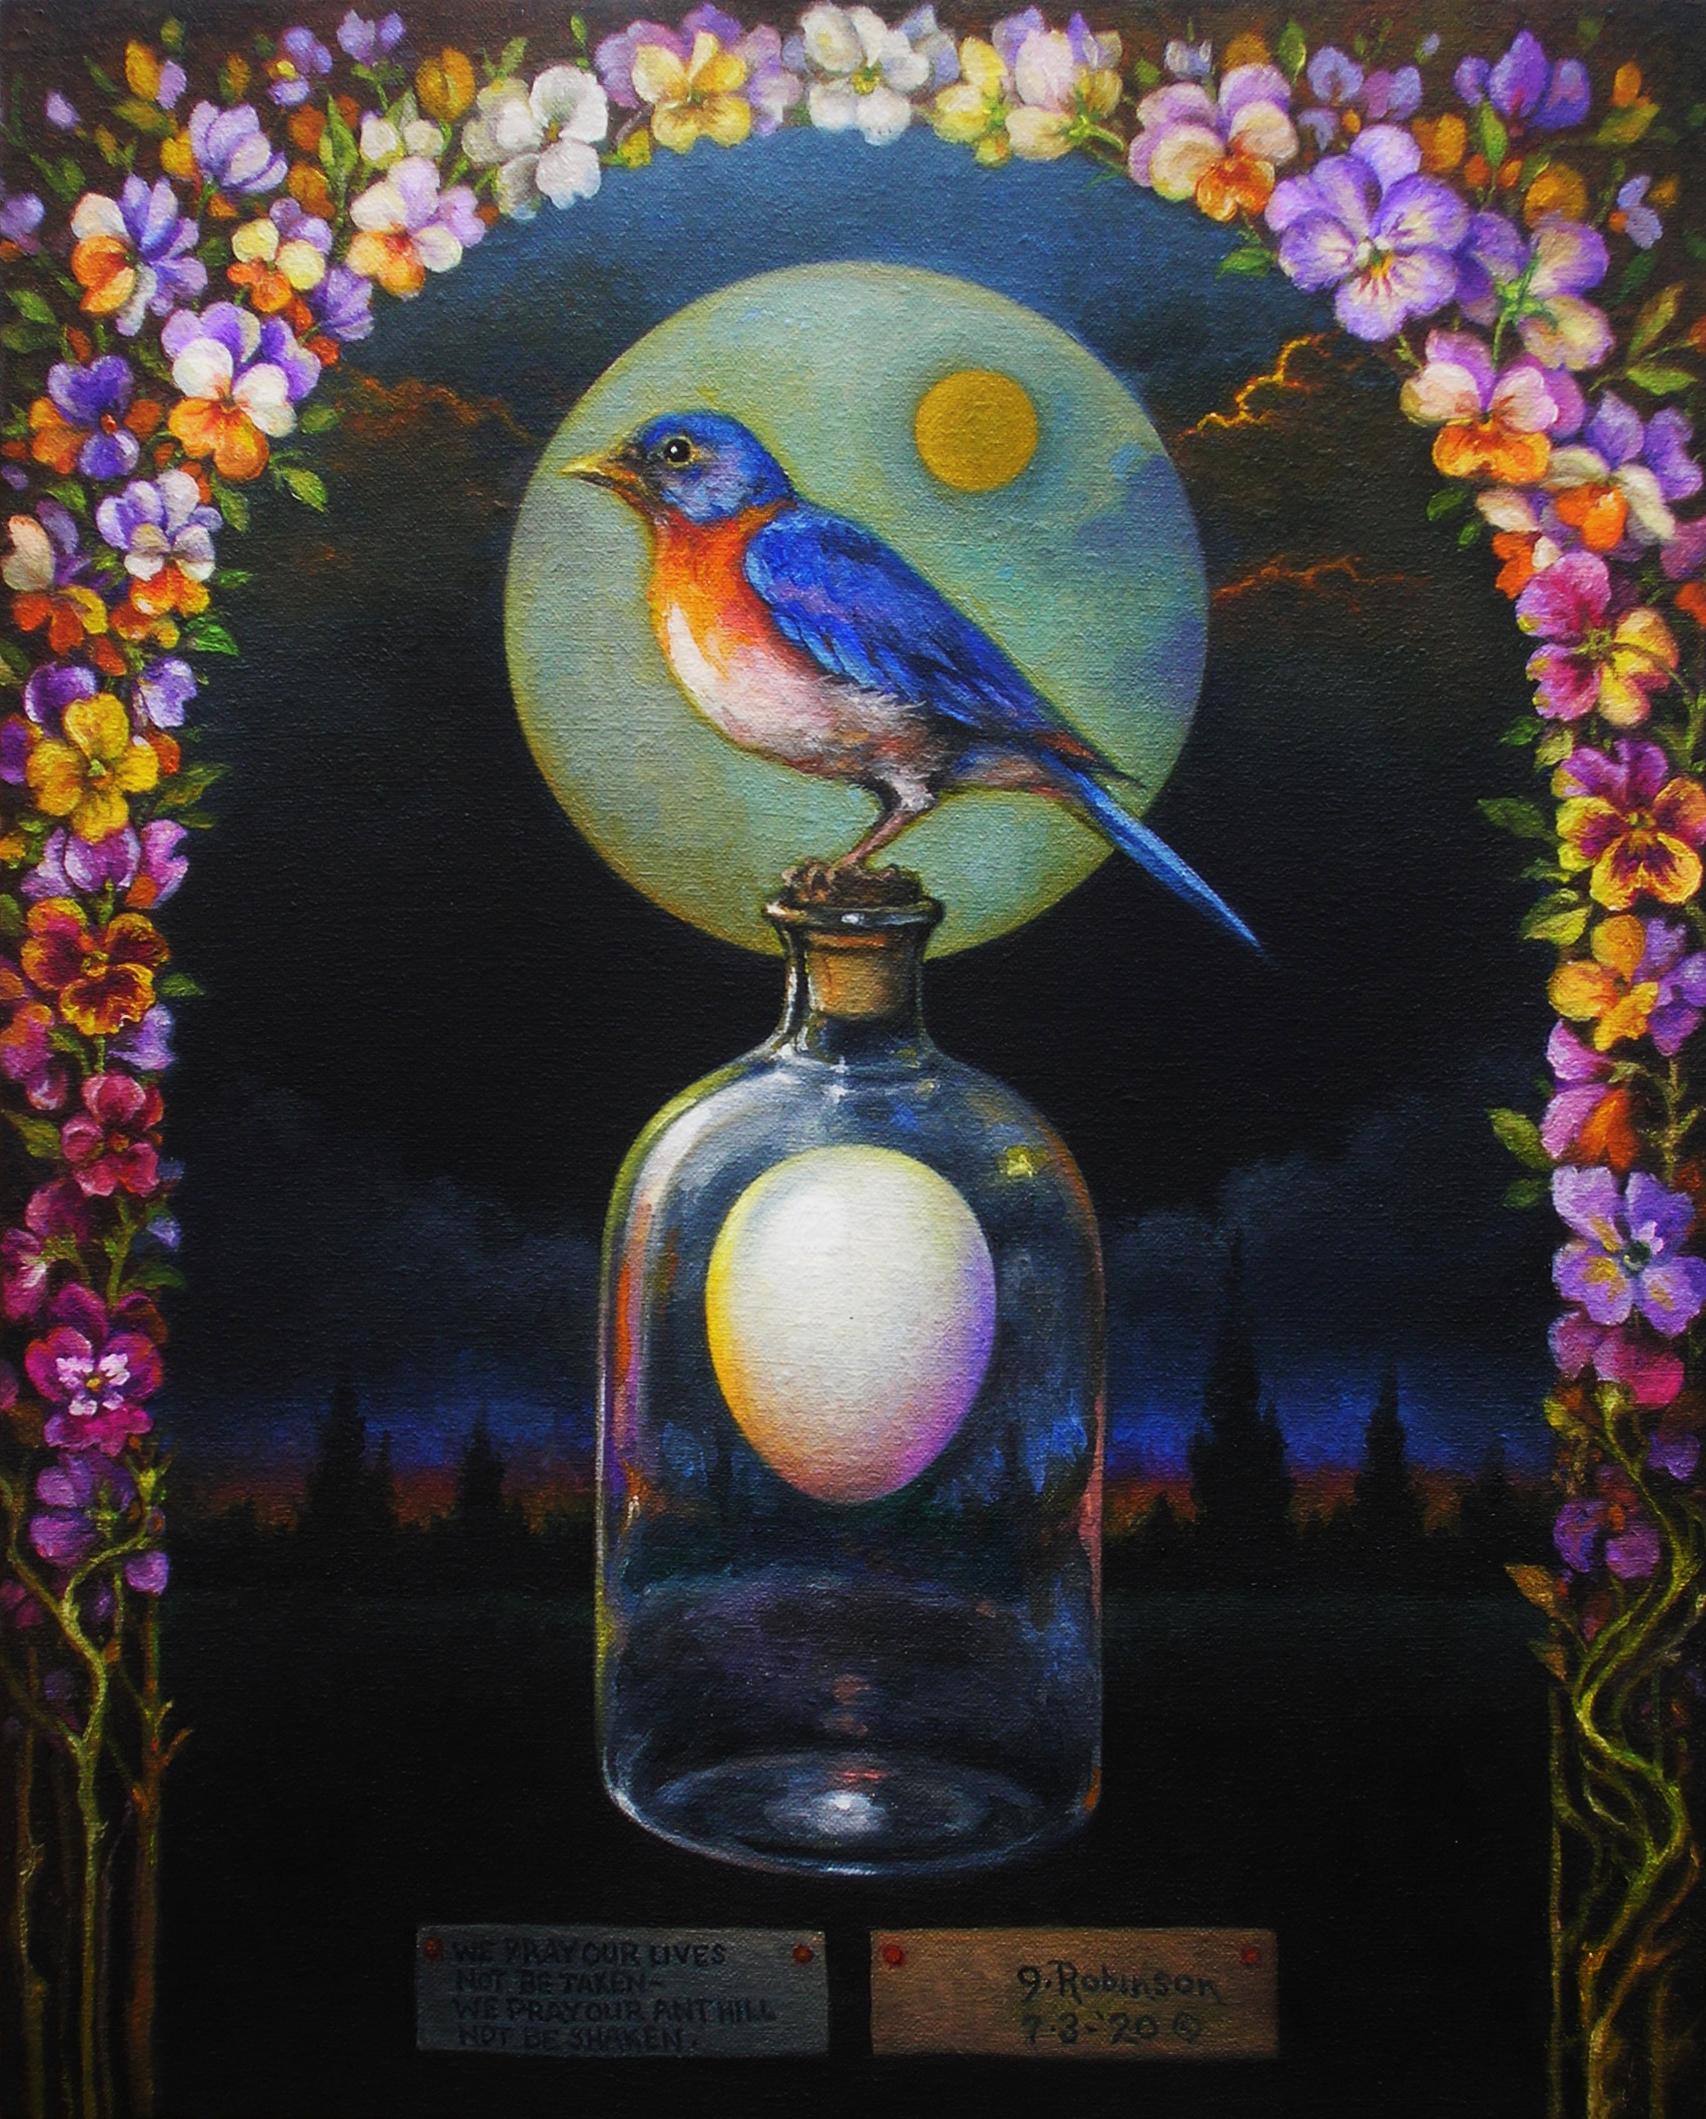 Guy Robinson Still-Life Painting - "Prayer" - Surrealist Painting - Still Life - patterns - blue bird - Arcimboldo